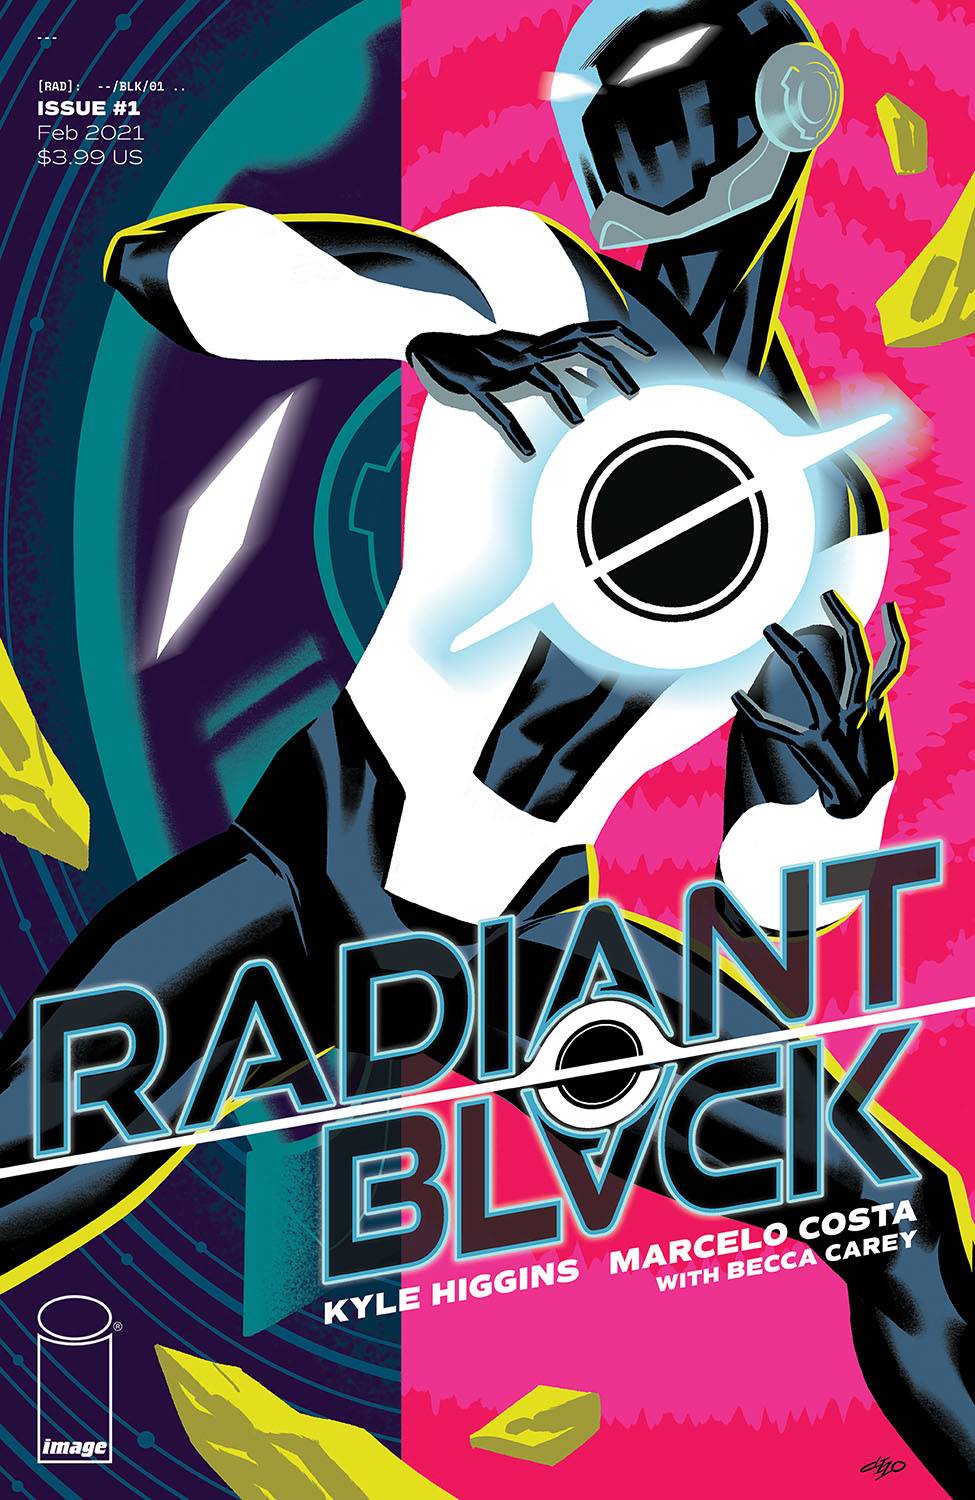 Radiant Black 1 - Heroes Cave